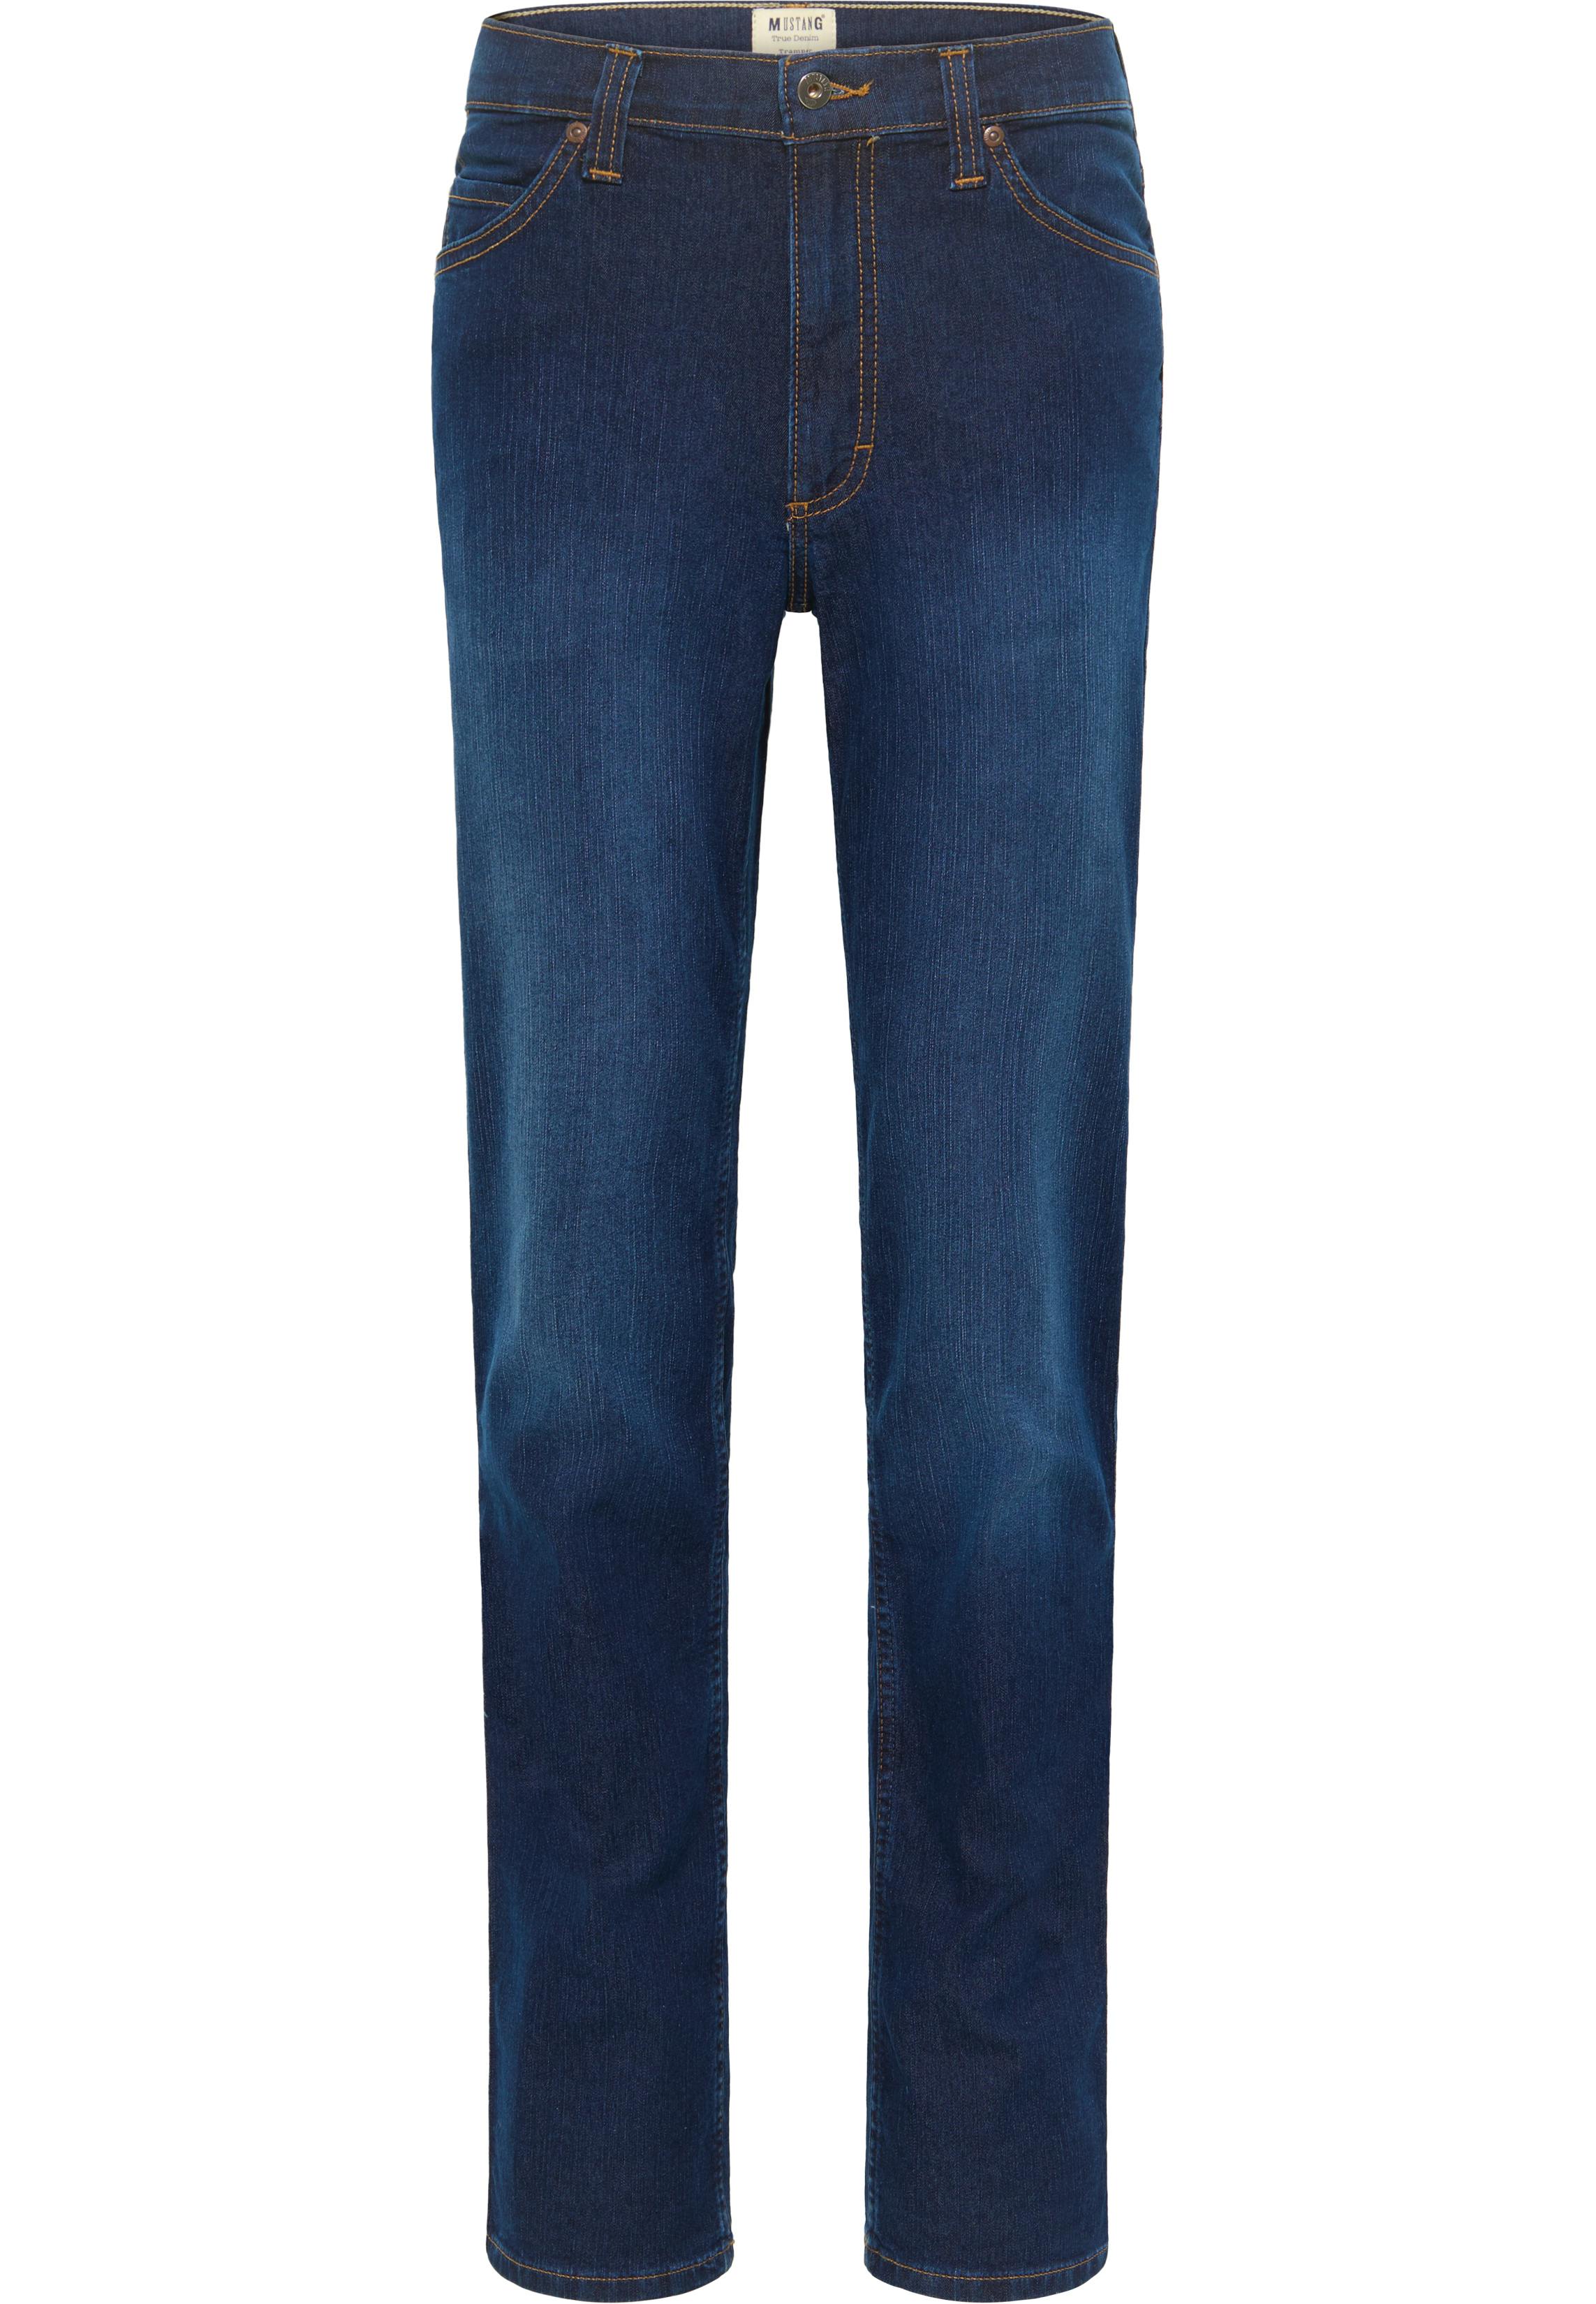 mustang jeans tramper straight leg extra lang blue wash uomo